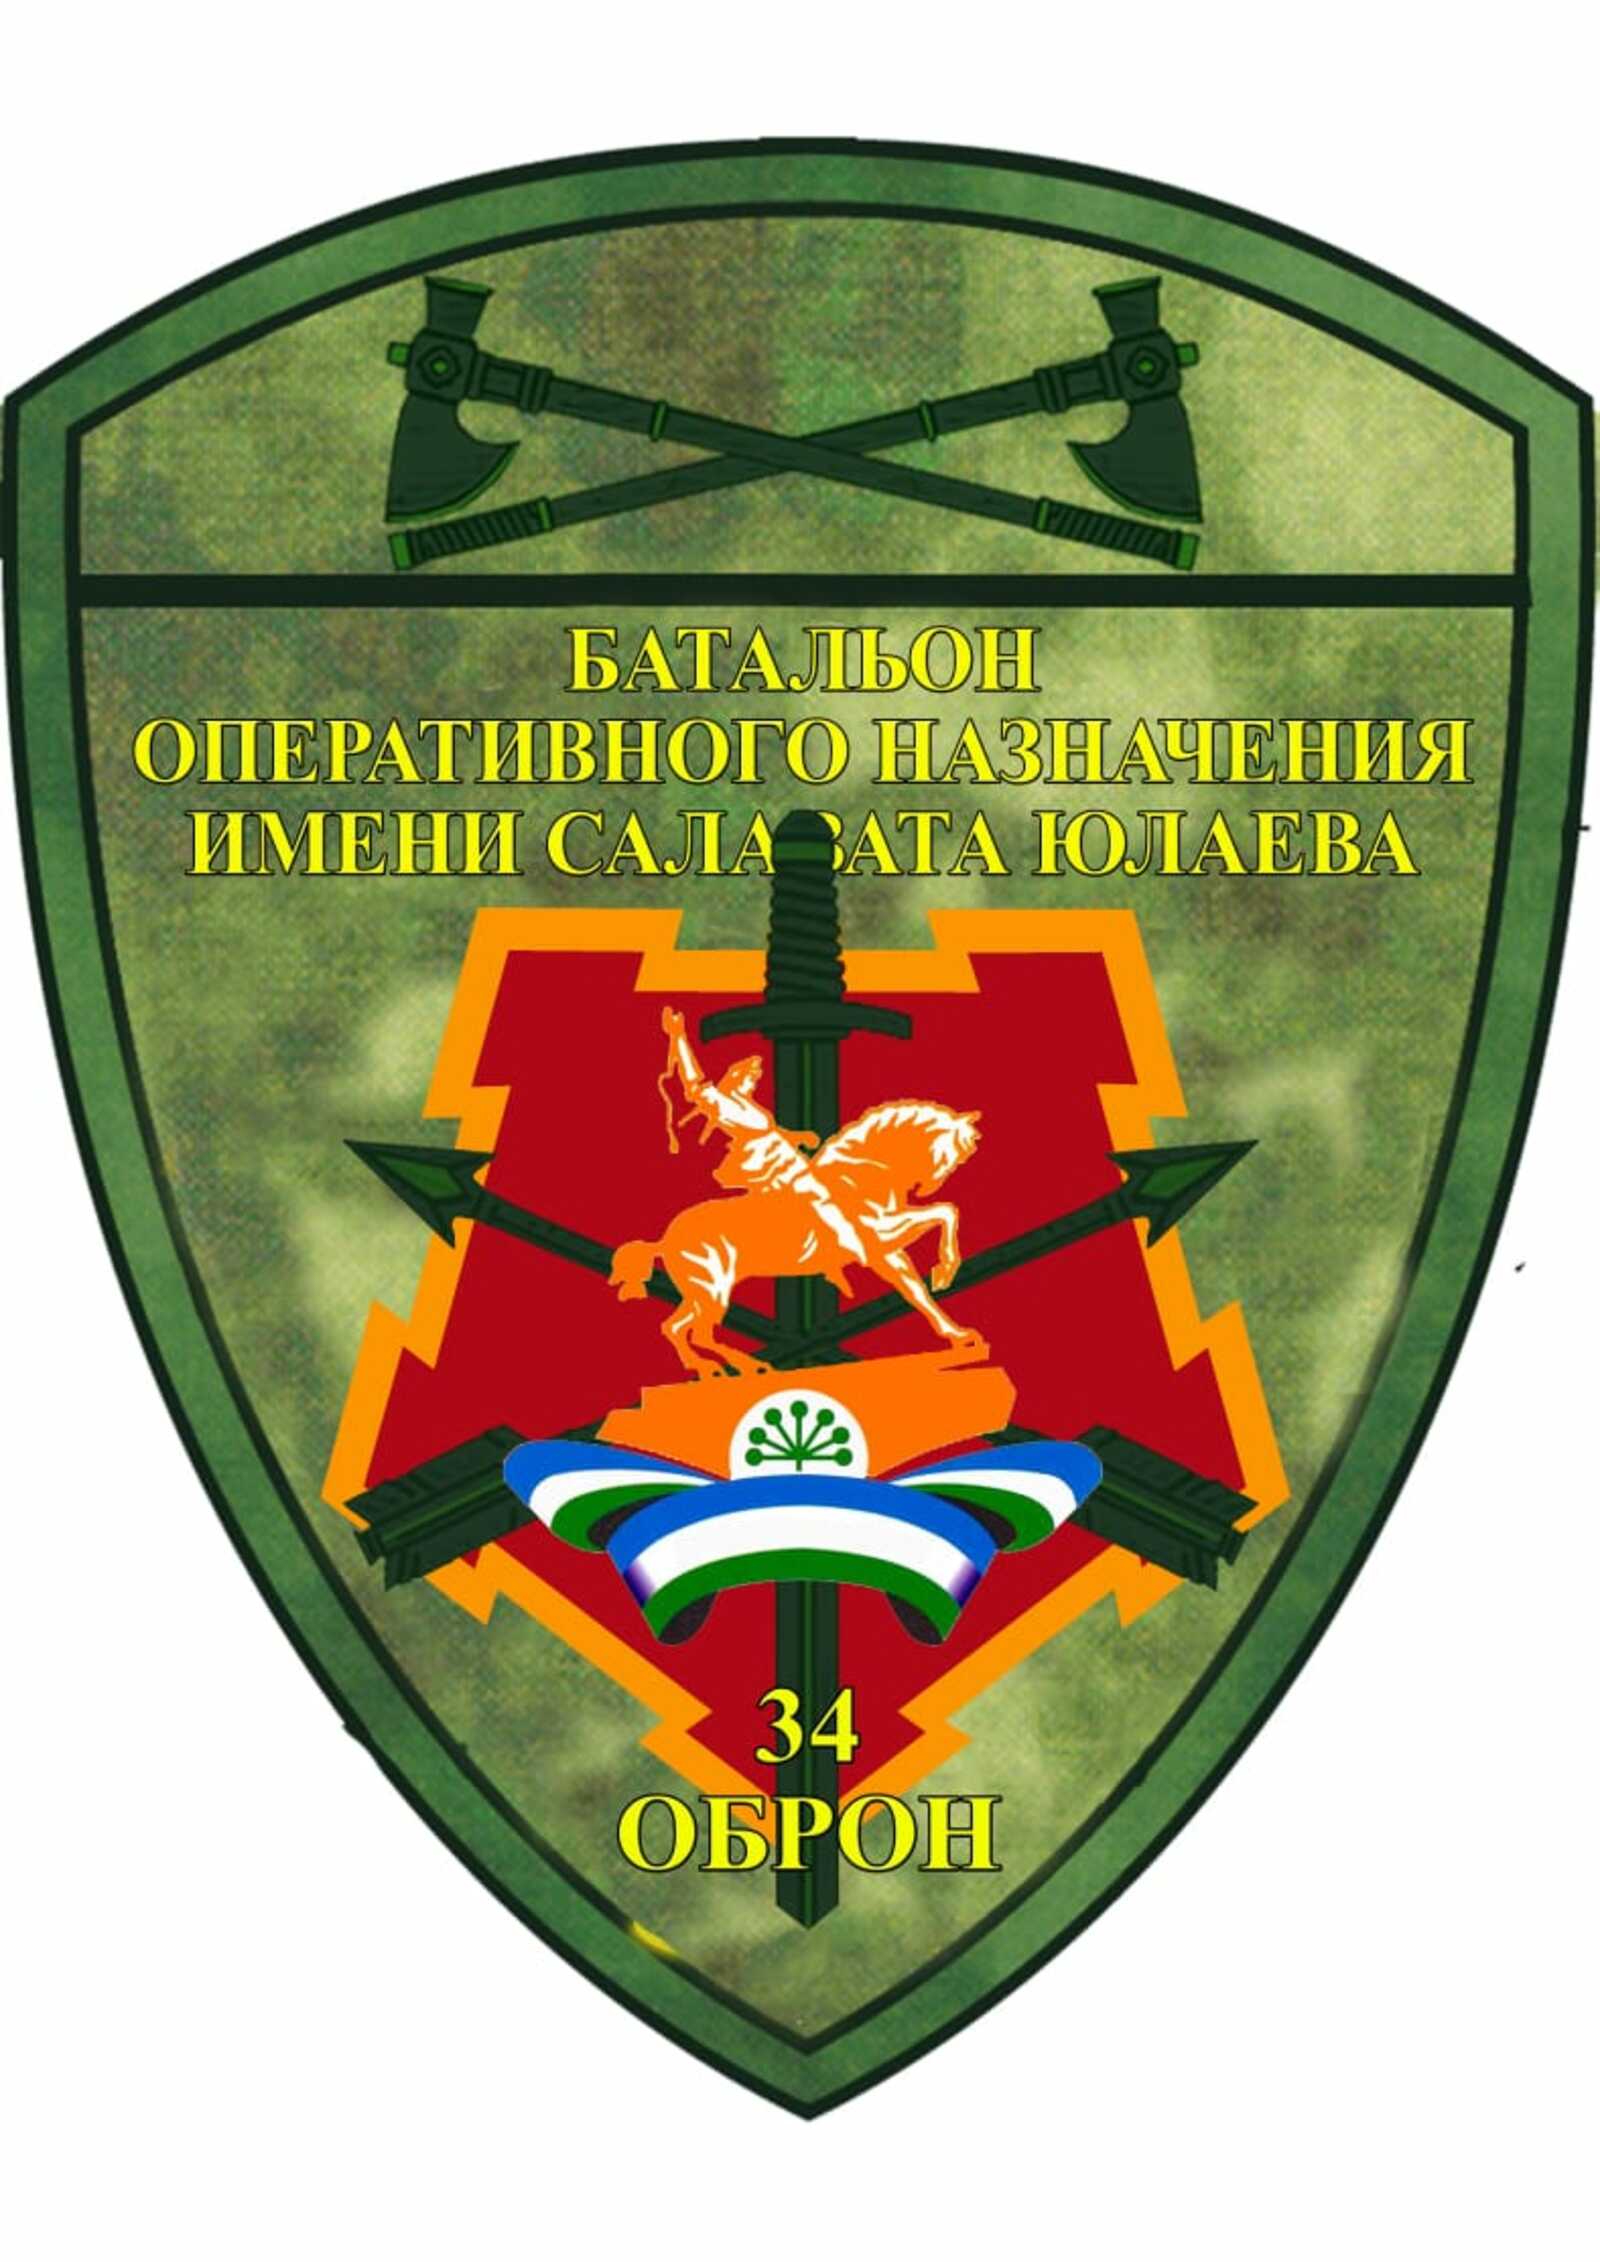 В Батальон имени Салавата Юлаева продолжается набор добровольцев, при этом костяк подразделения уже сформирован